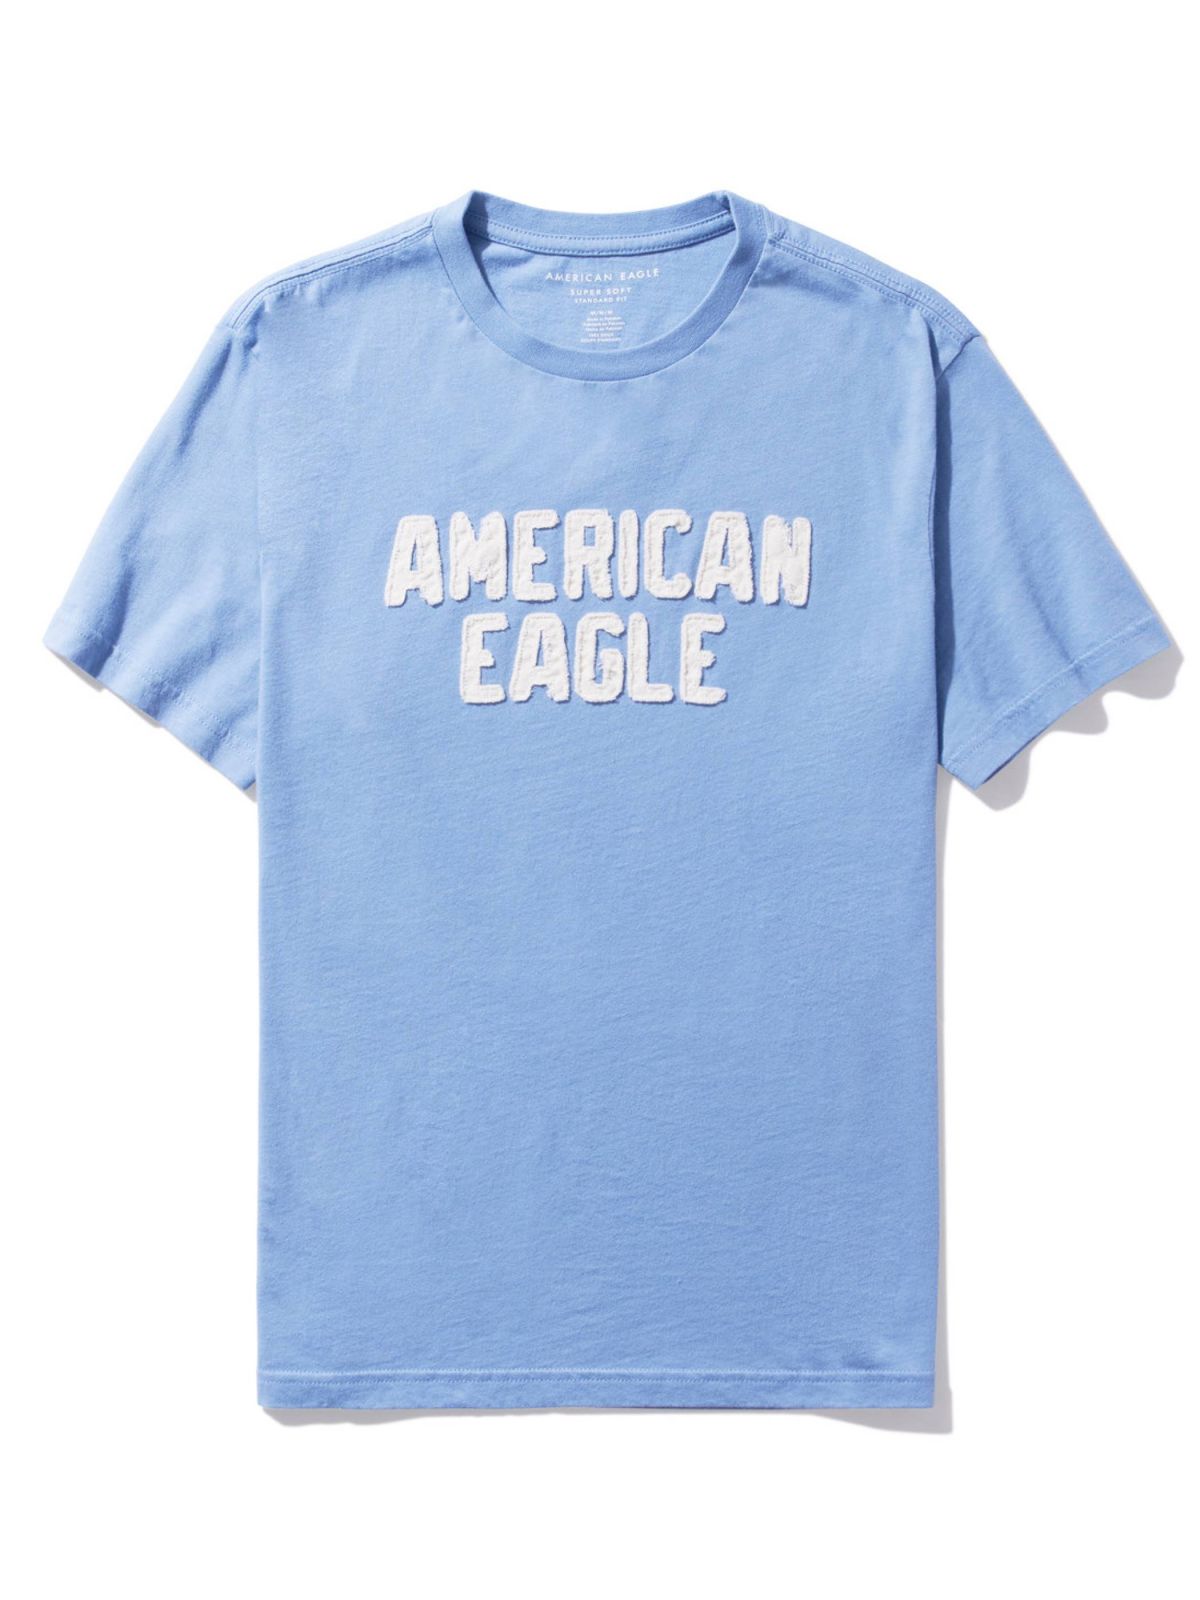  טי שירט עם לוגו / גברים של AMERICAN EAGLE